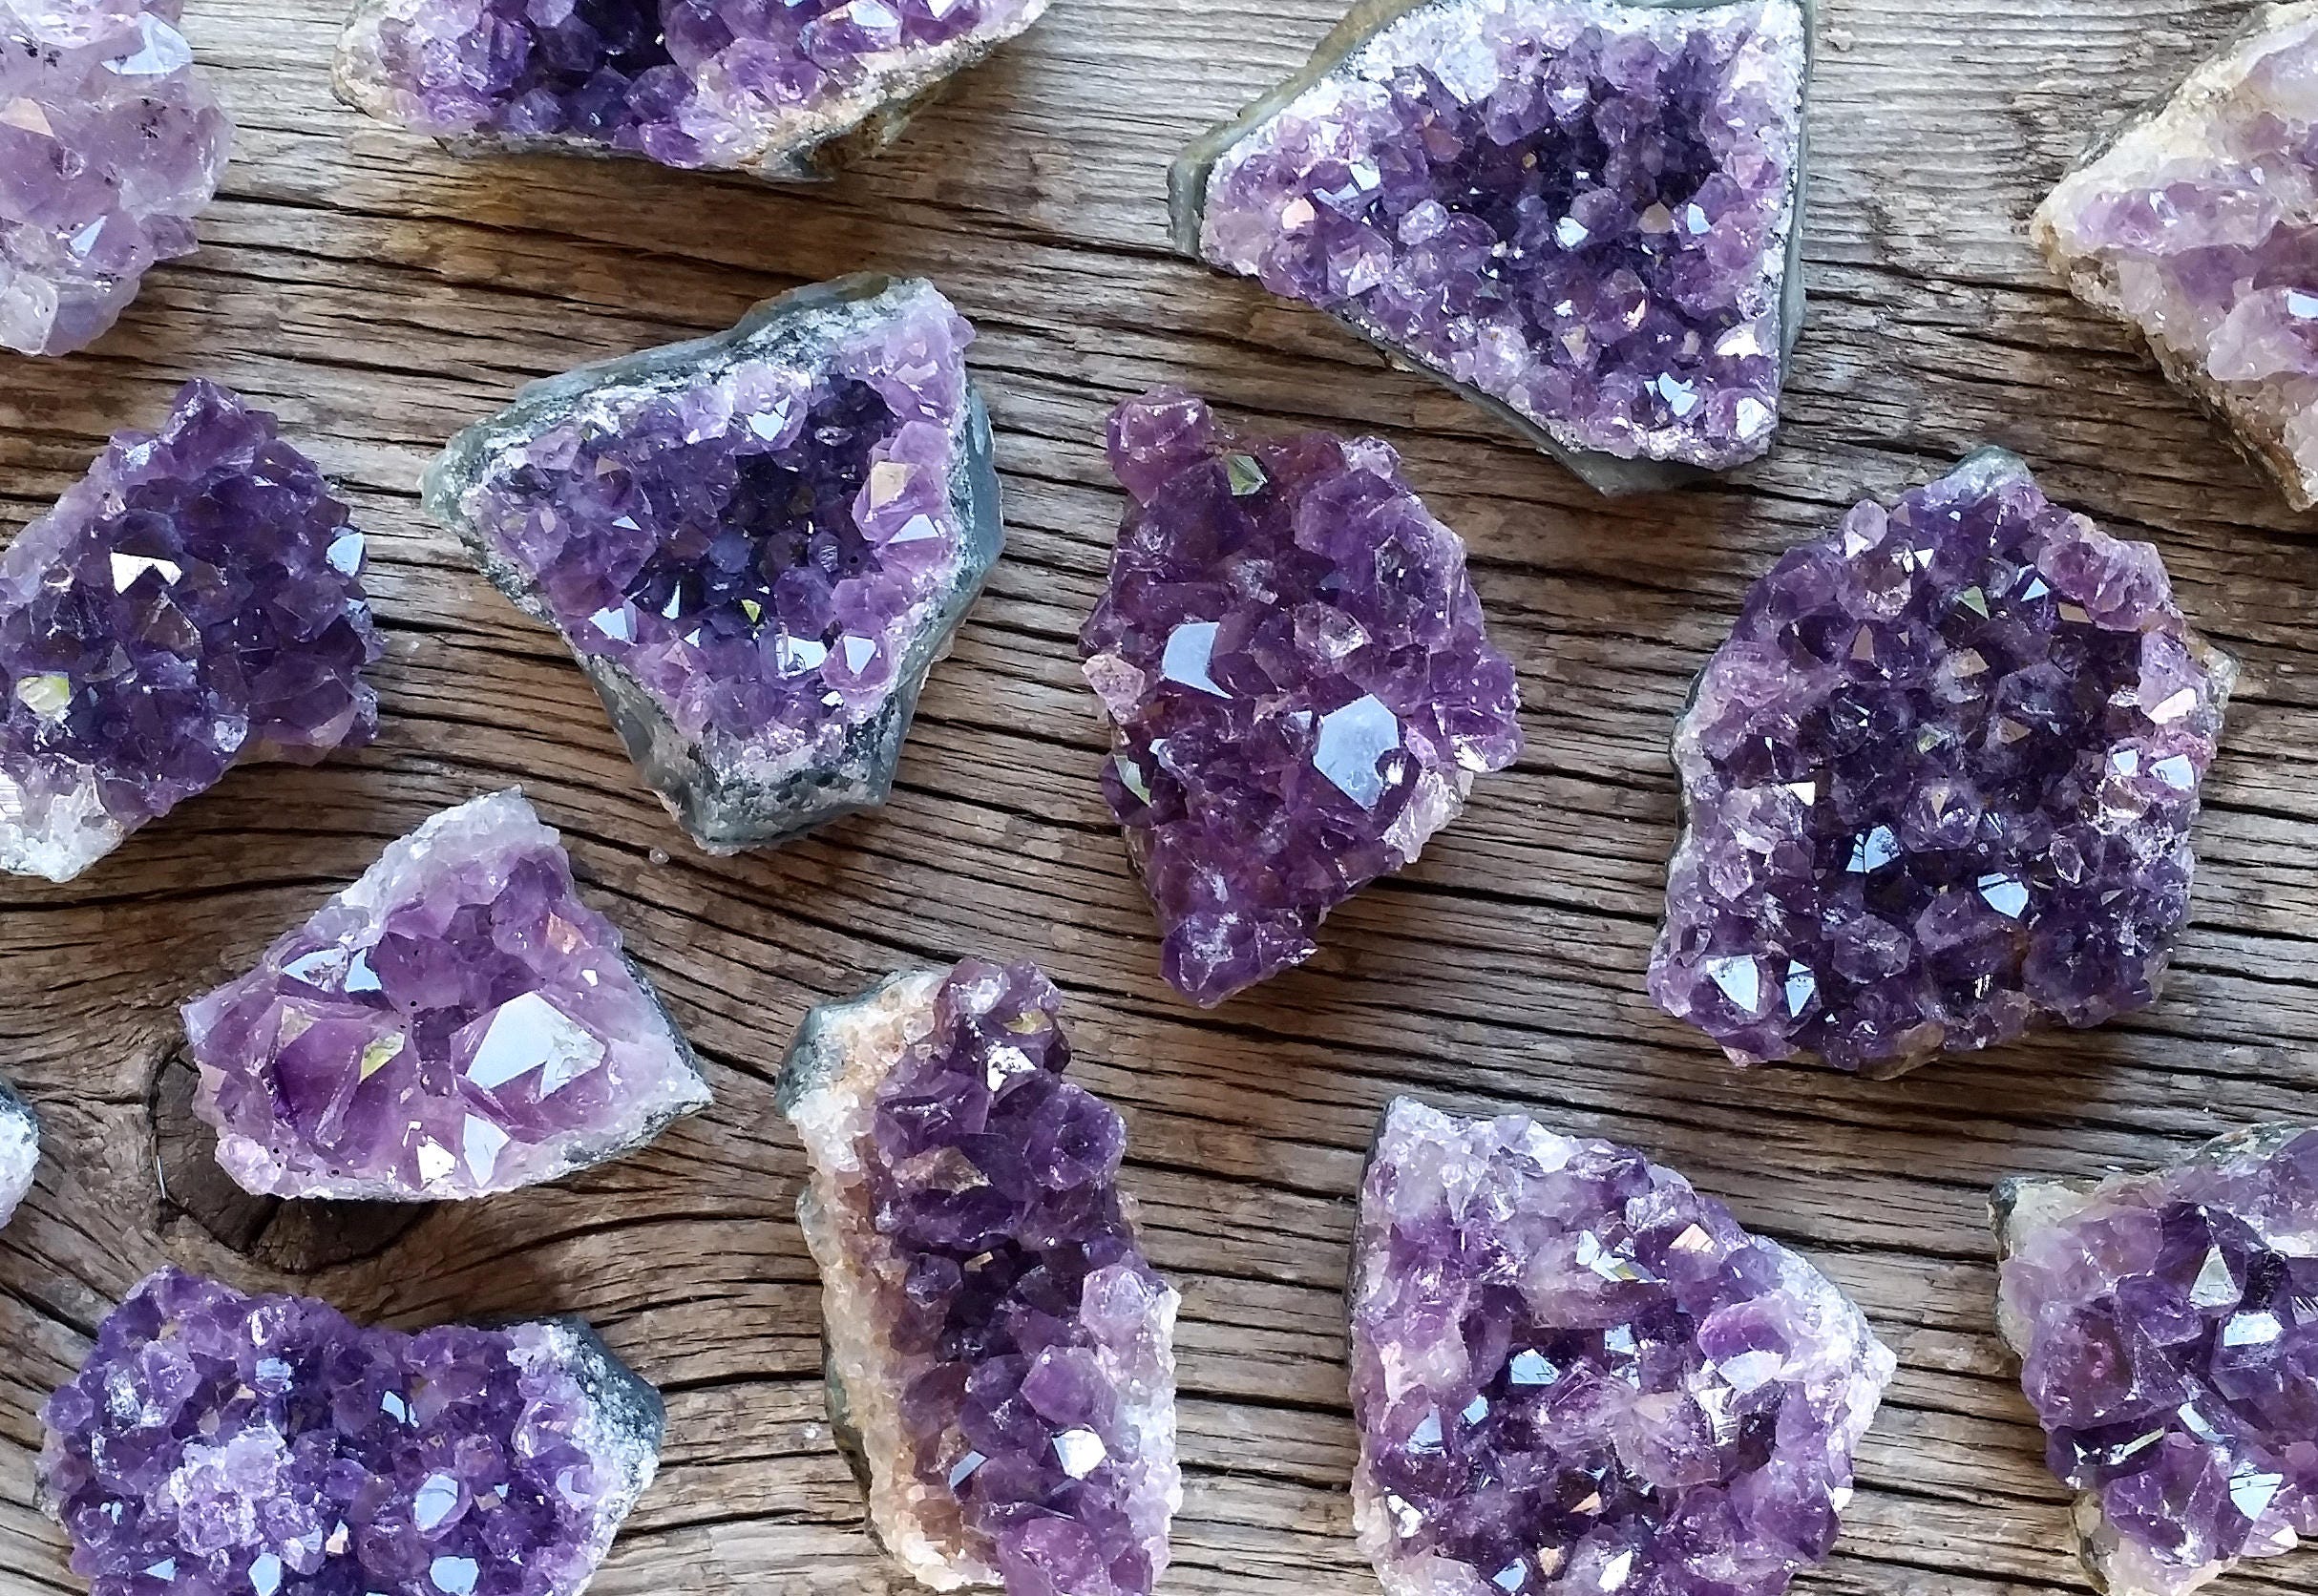 amethyst gemstone healing properties